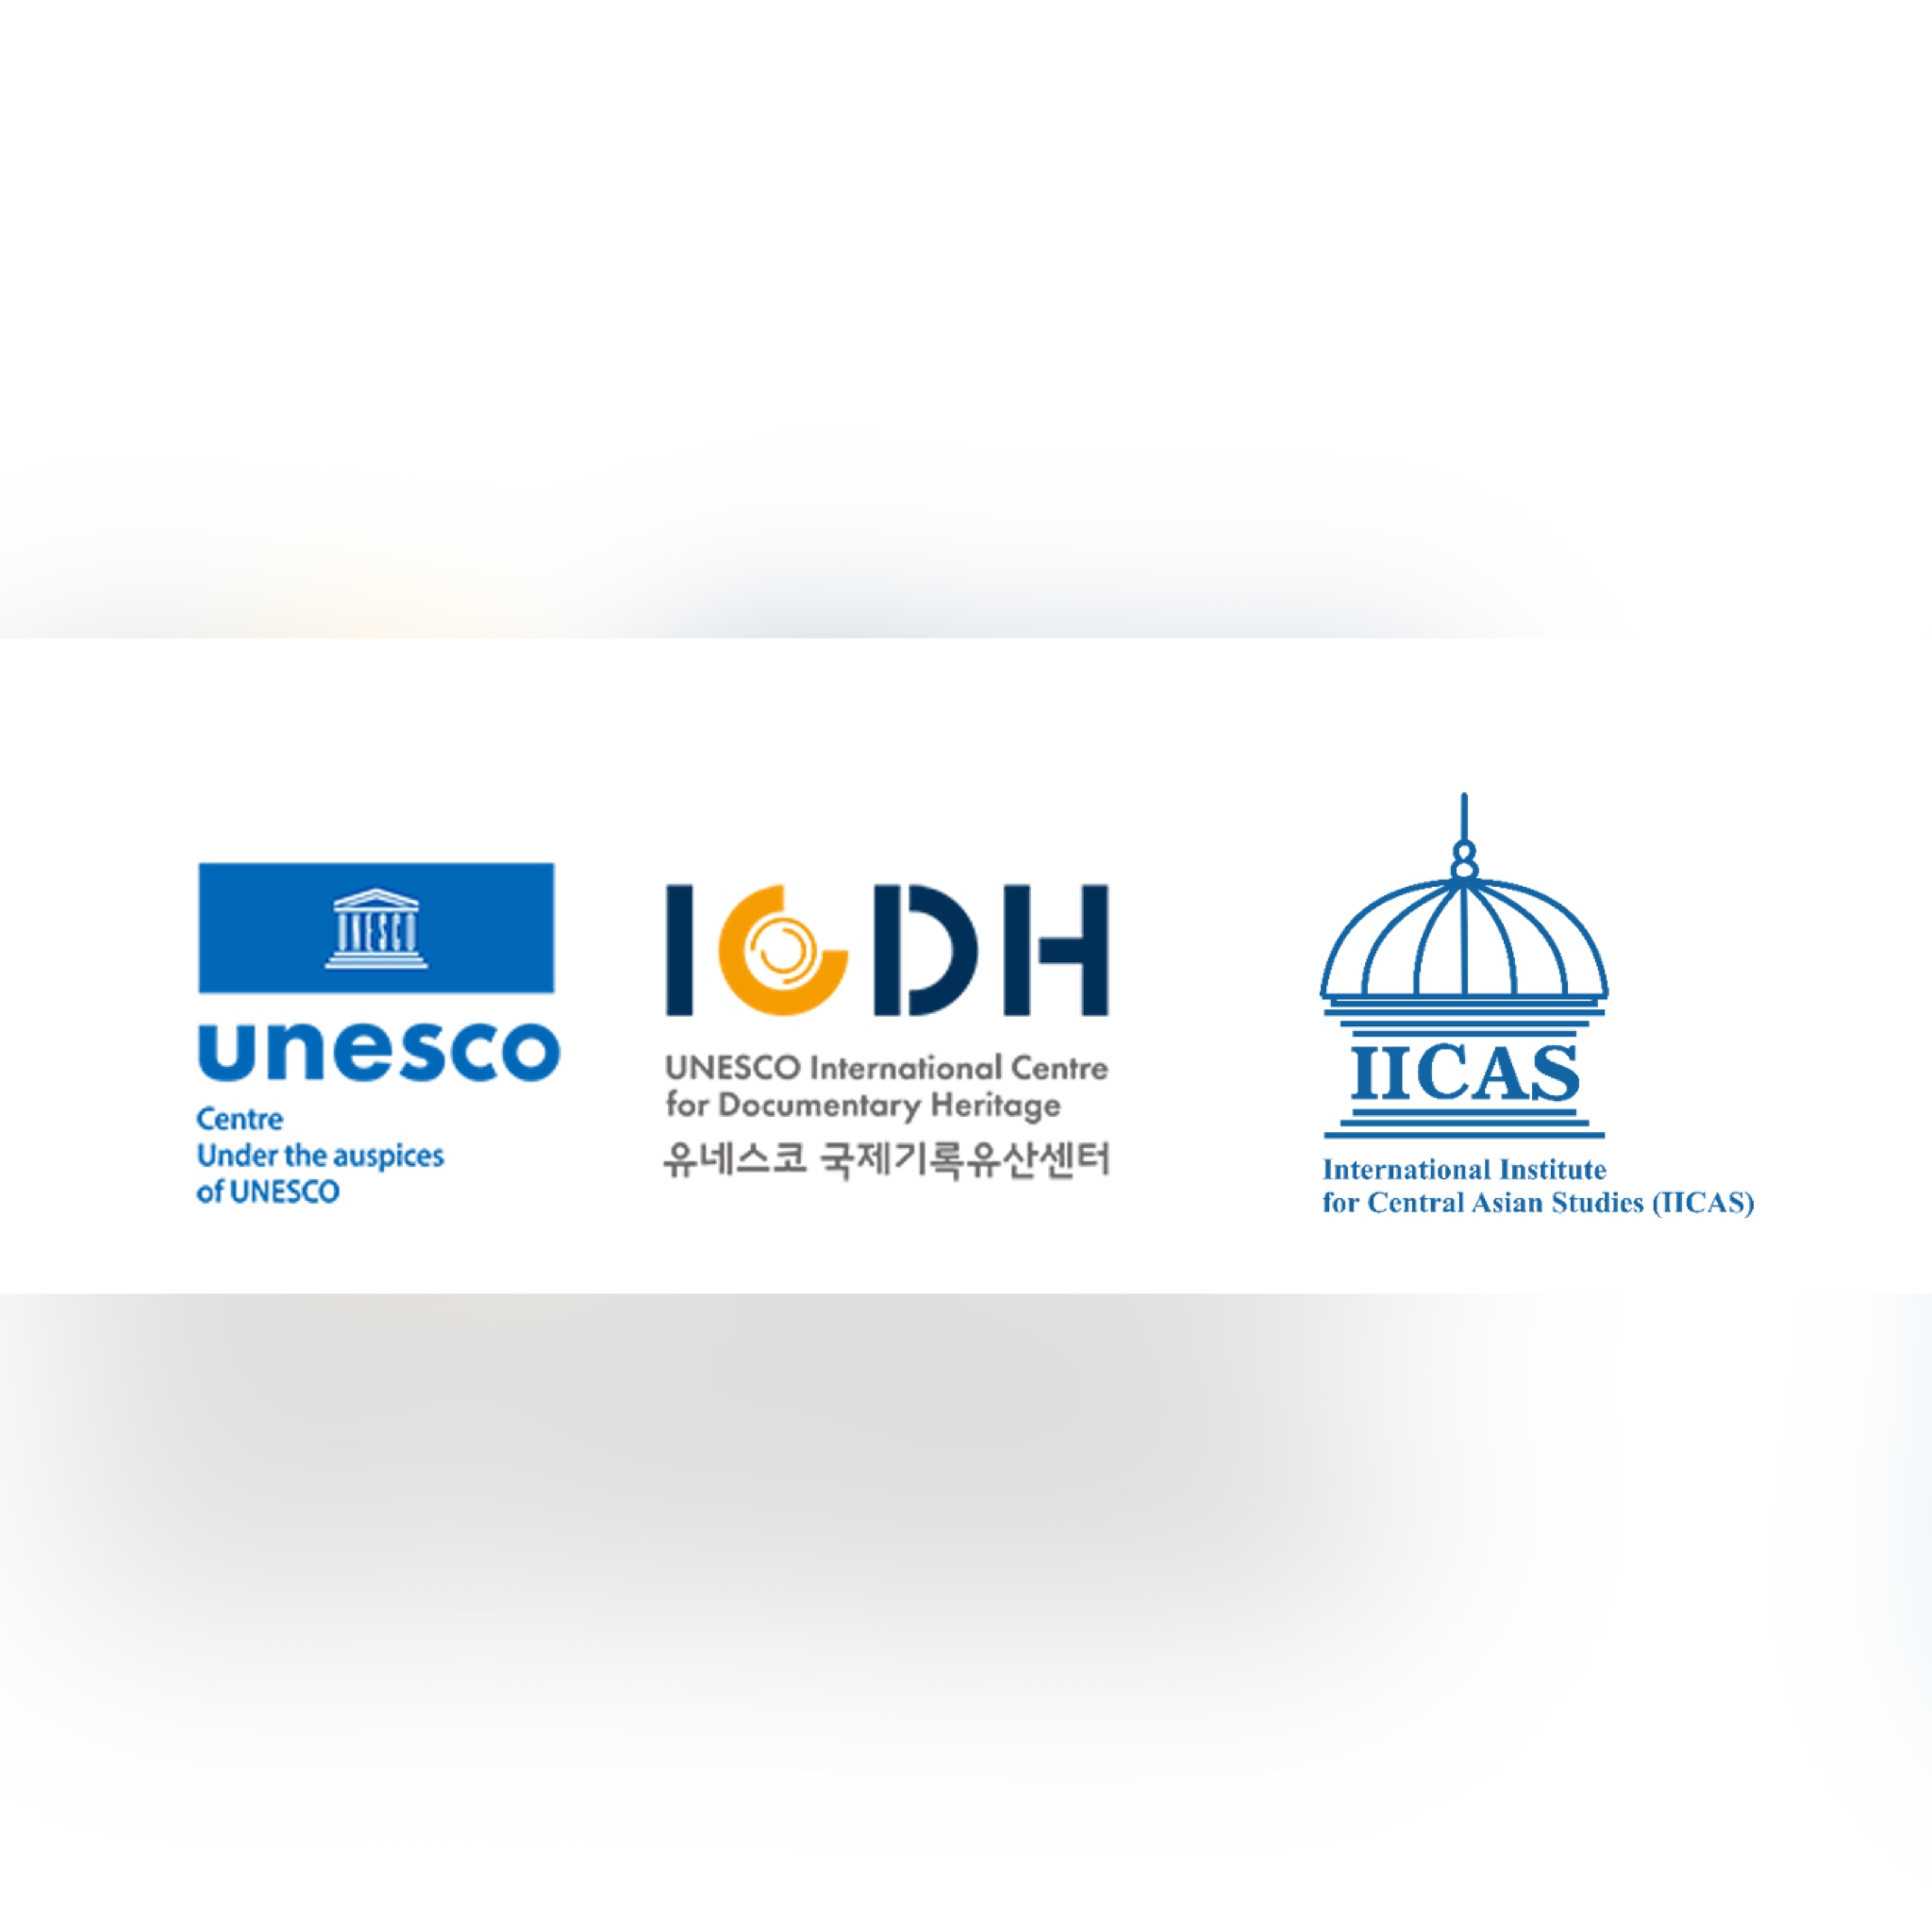 МИЦАИ с удовольствием сообщает о начале нового этапа сотрудничества с Международным центром документального наследия (ICDH) под эгидой ЮНЕСКО